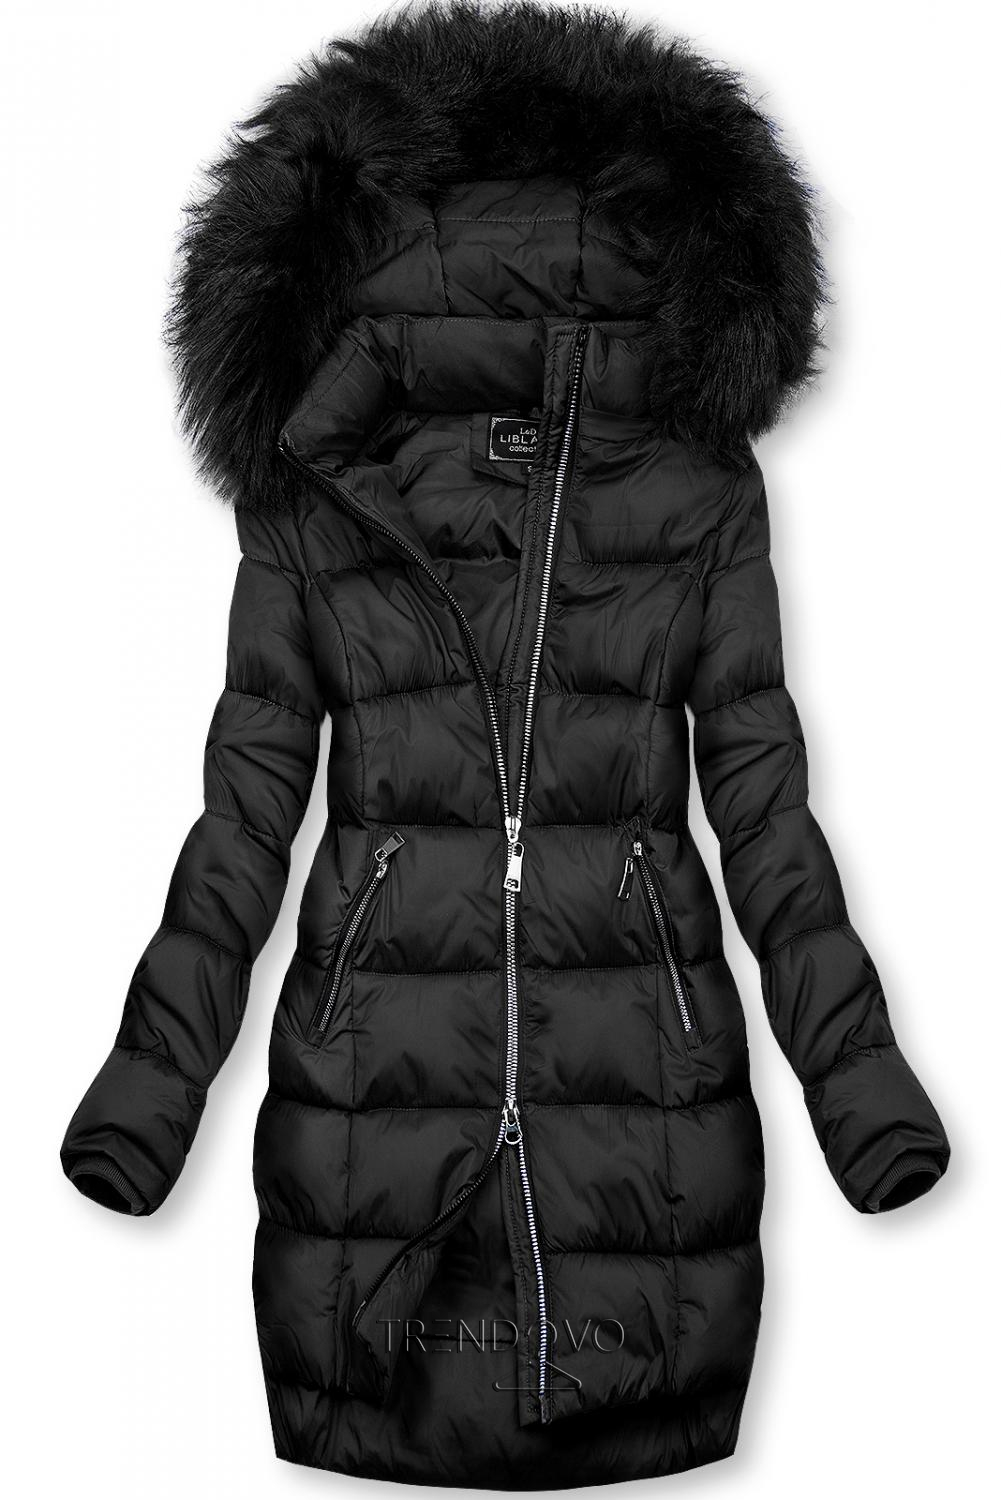 Černá zimní bunda na zip